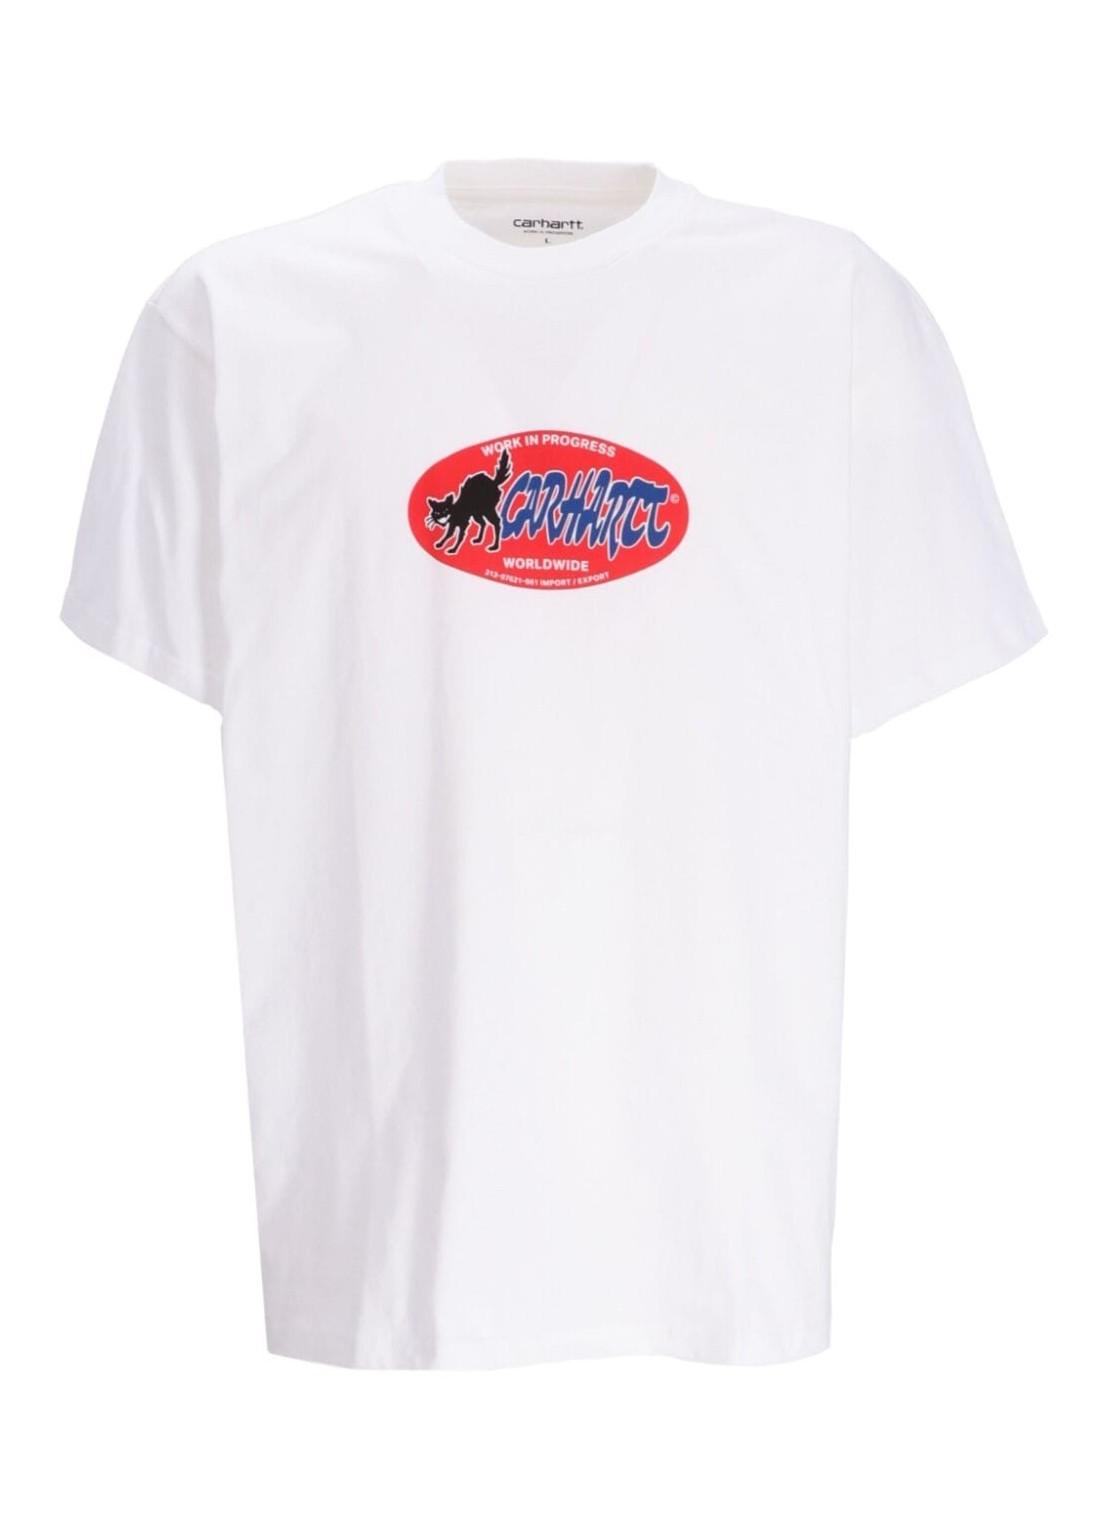 Camiseta carhartt t-shirt man s/s cat sticker t-shirt i032886 02xx talla XL
 